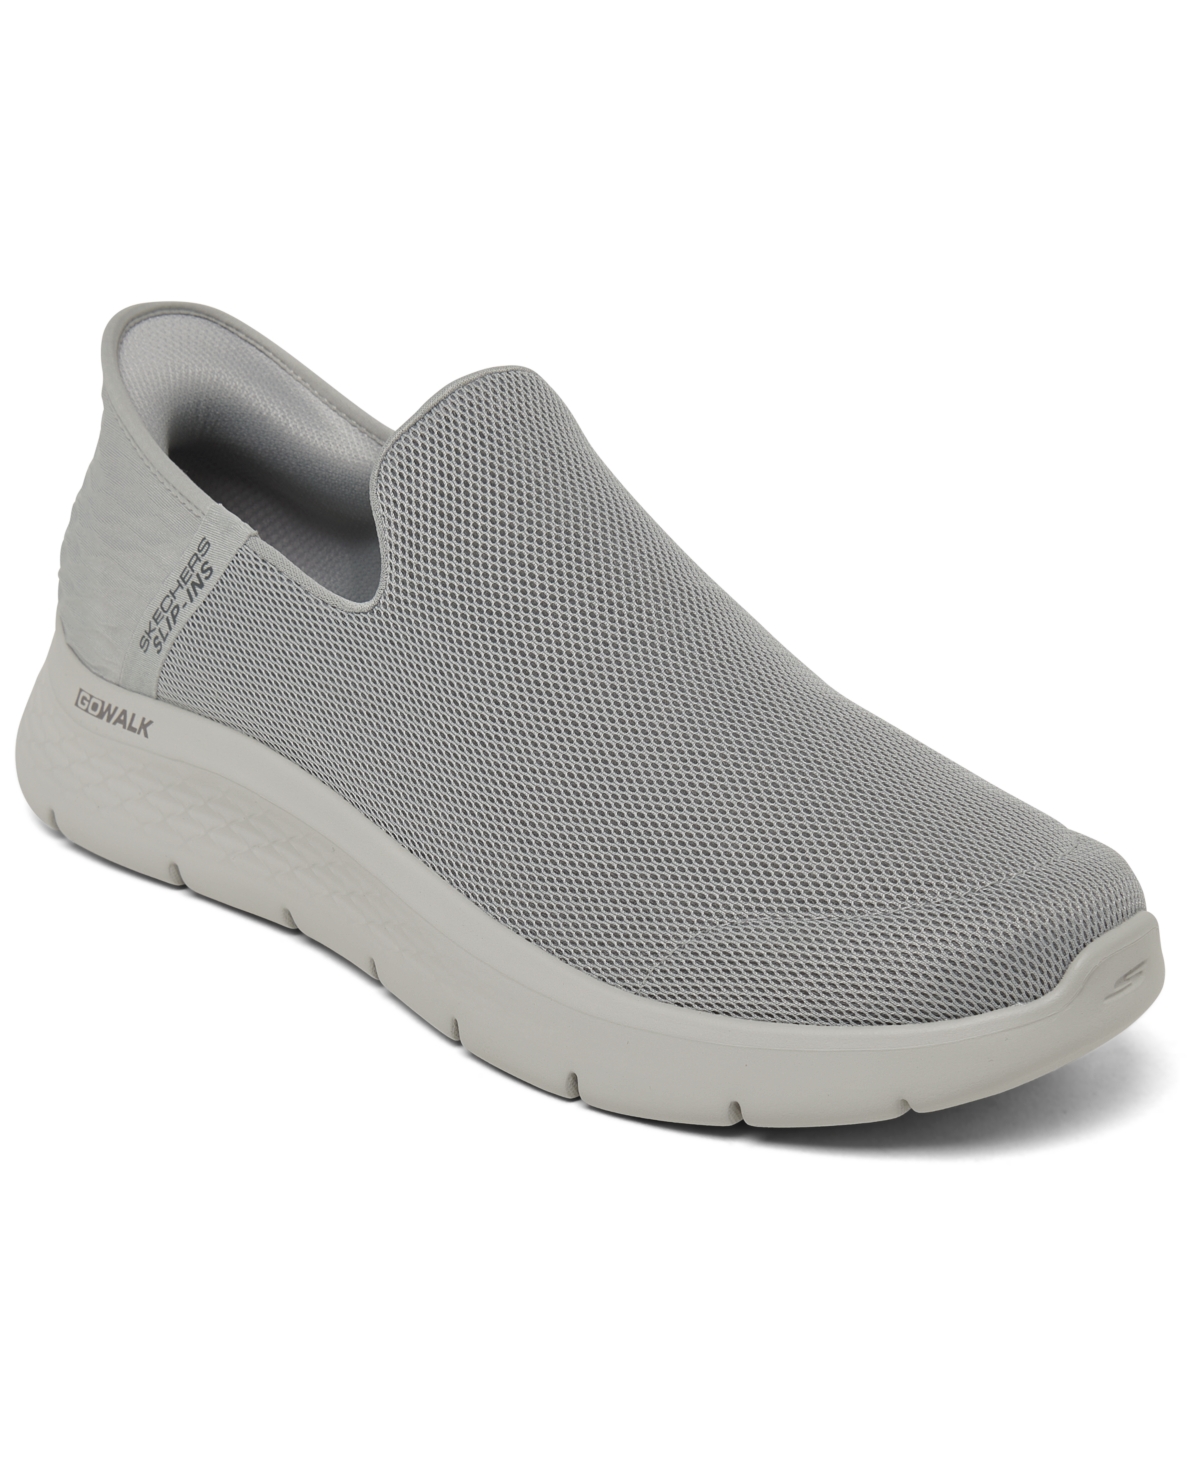 Men's Slip-Ins GoWalk Flex Walking Sneakers from Finish Line - Light grey